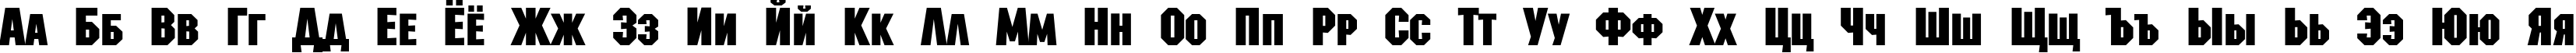 Пример написания русского алфавита шрифтом a_MachinaNovaCps Bold